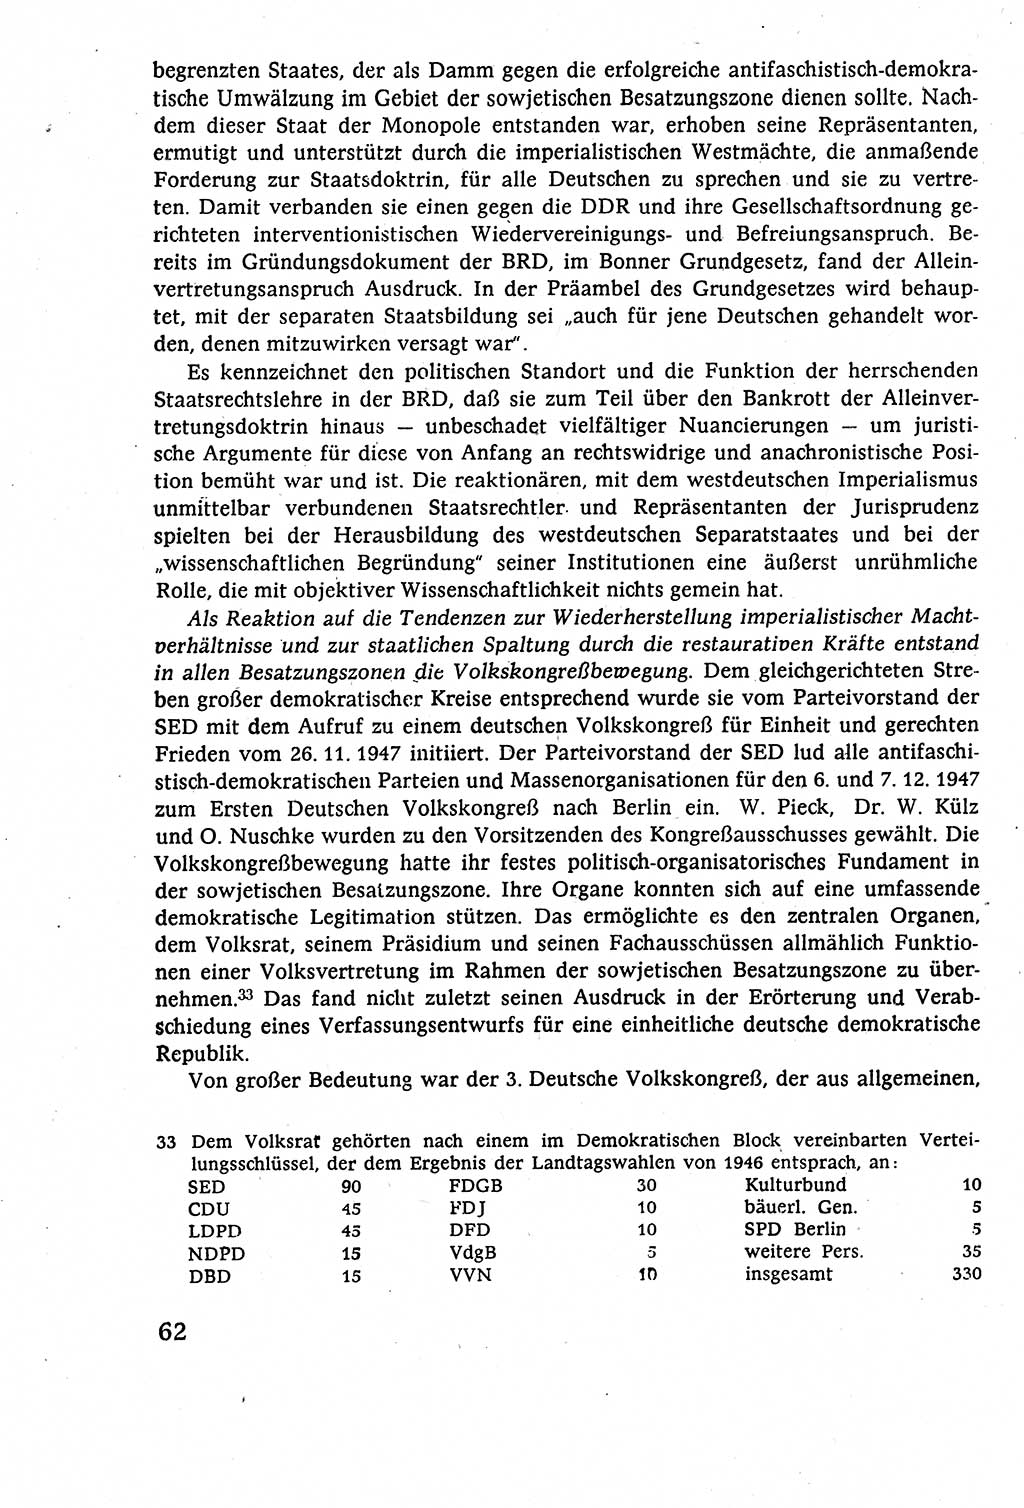 Staatsrecht der DDR (Deutsche Demokratische Republik), Lehrbuch 1977, Seite 62 (St.-R. DDR Lb. 1977, S. 62)